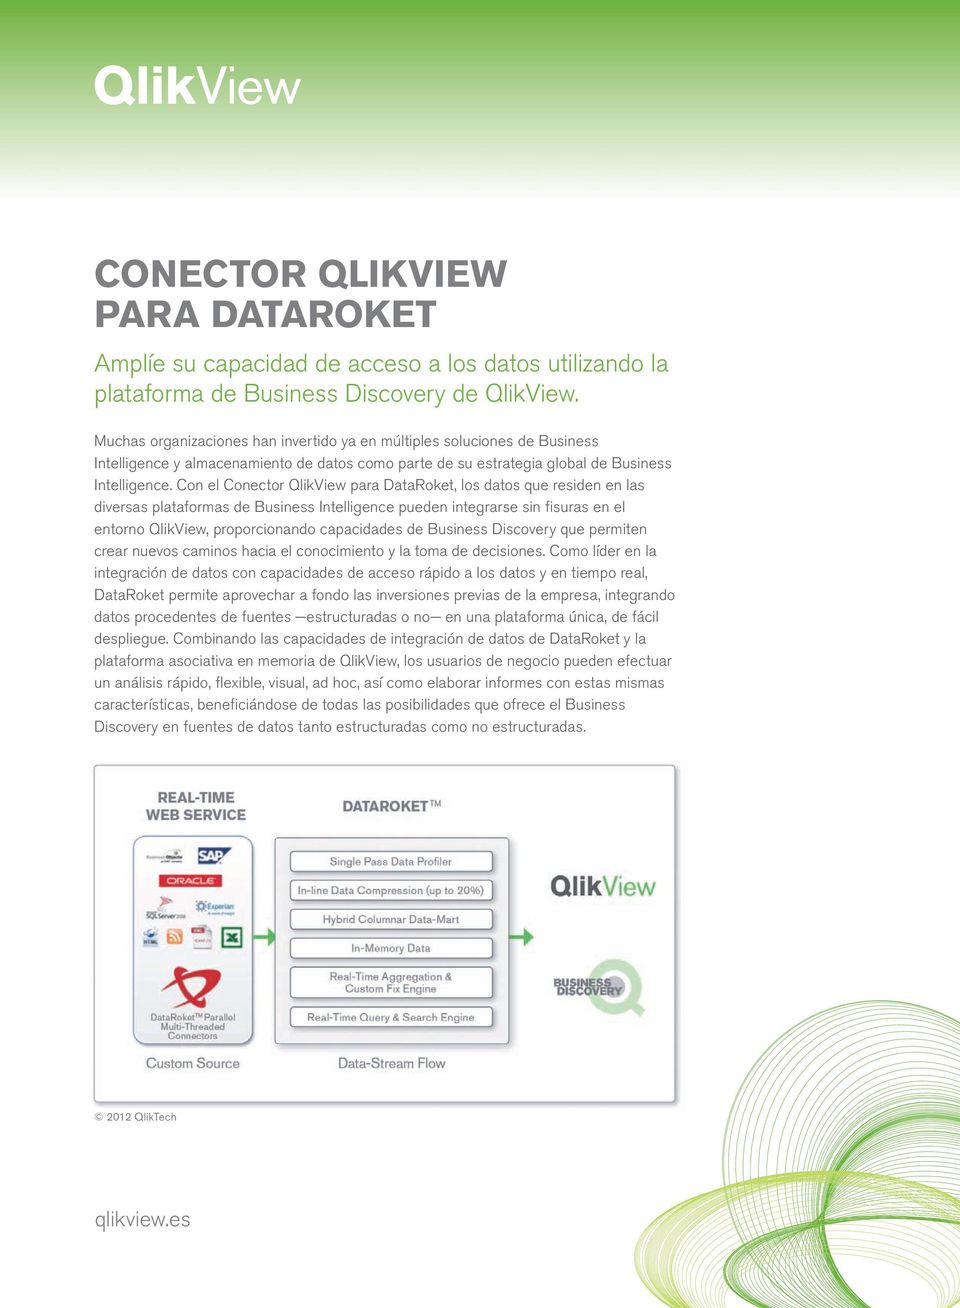 Con el Conector QlikView para DataRoket, los datos que residen en las diversas plataformas de Business Intelligence pueden integrarse sin fisuras en el entorno QlikView, proporcionando capacidades de